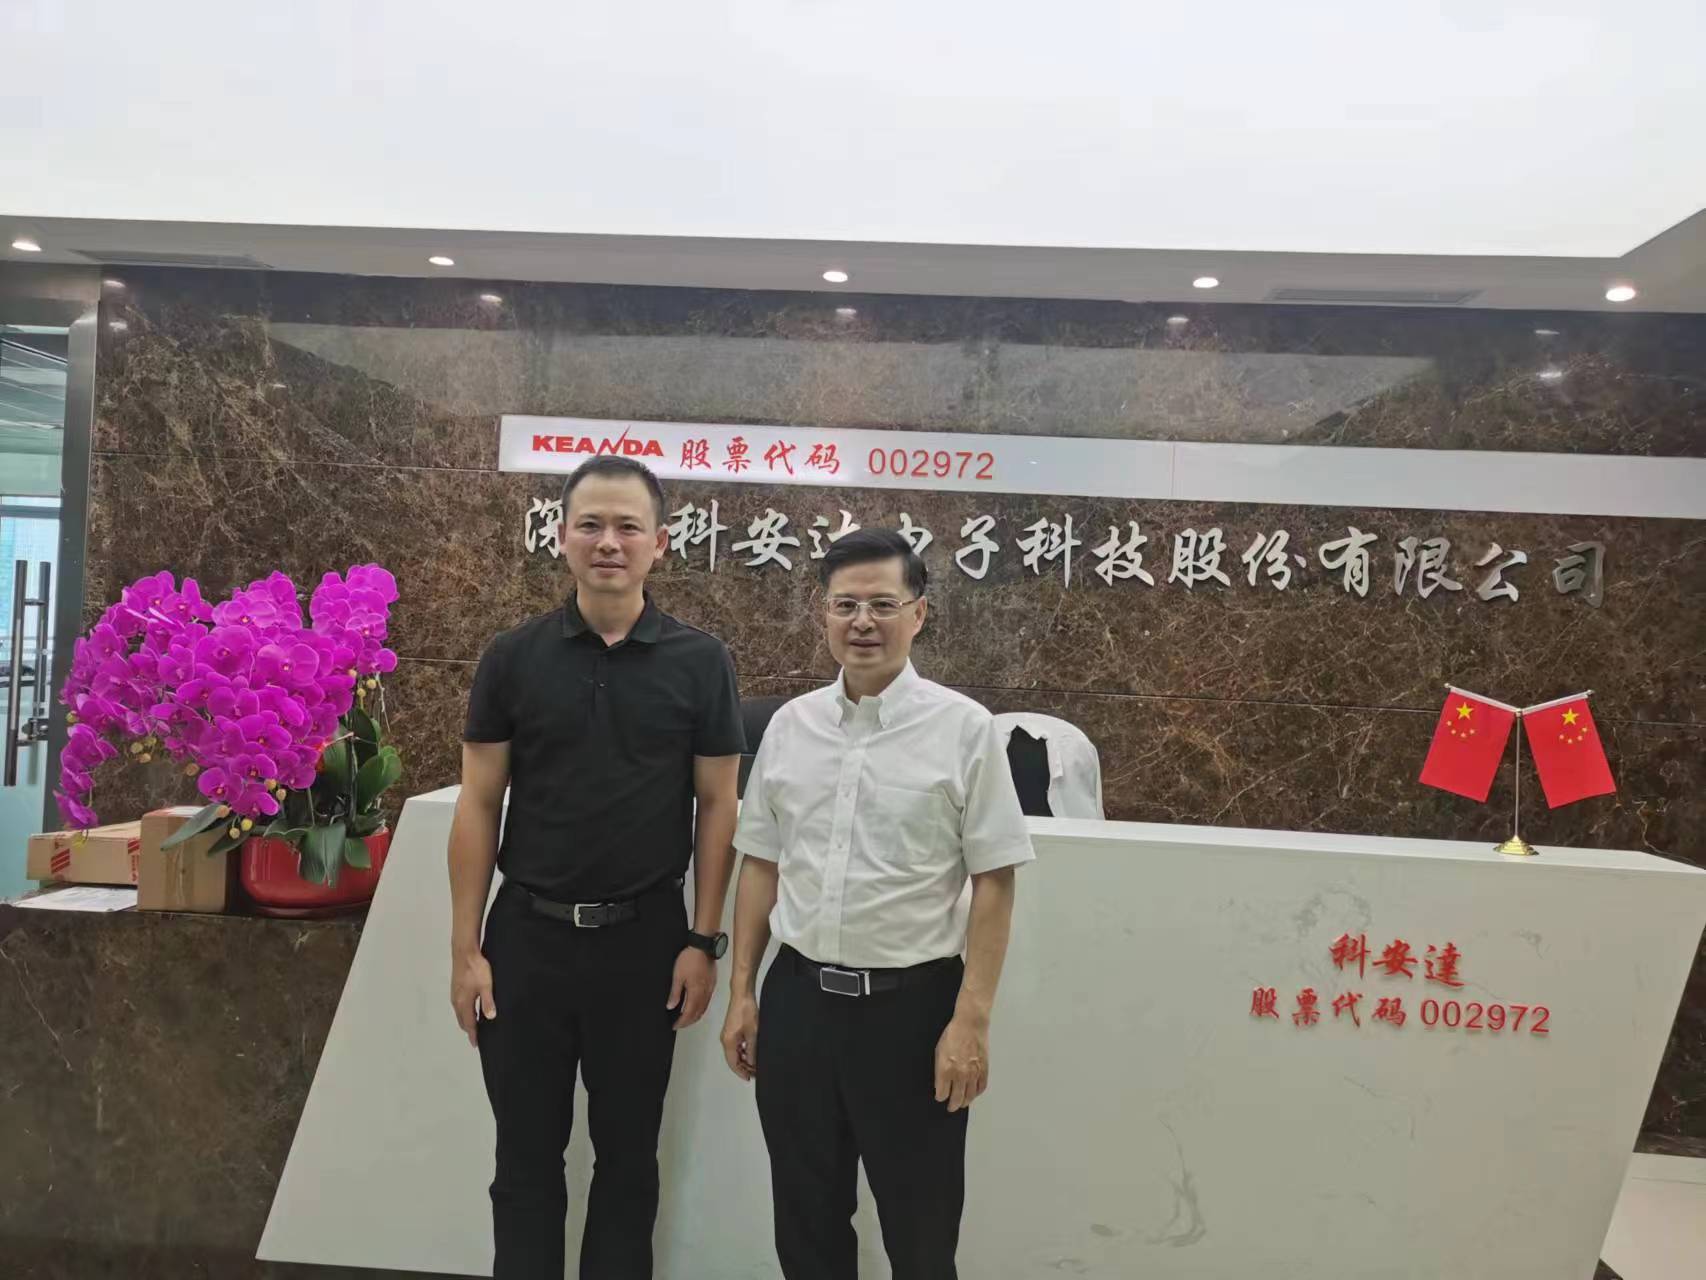 宏德伟创到访深圳市科安达电子科技股份有限公司洽谈合作